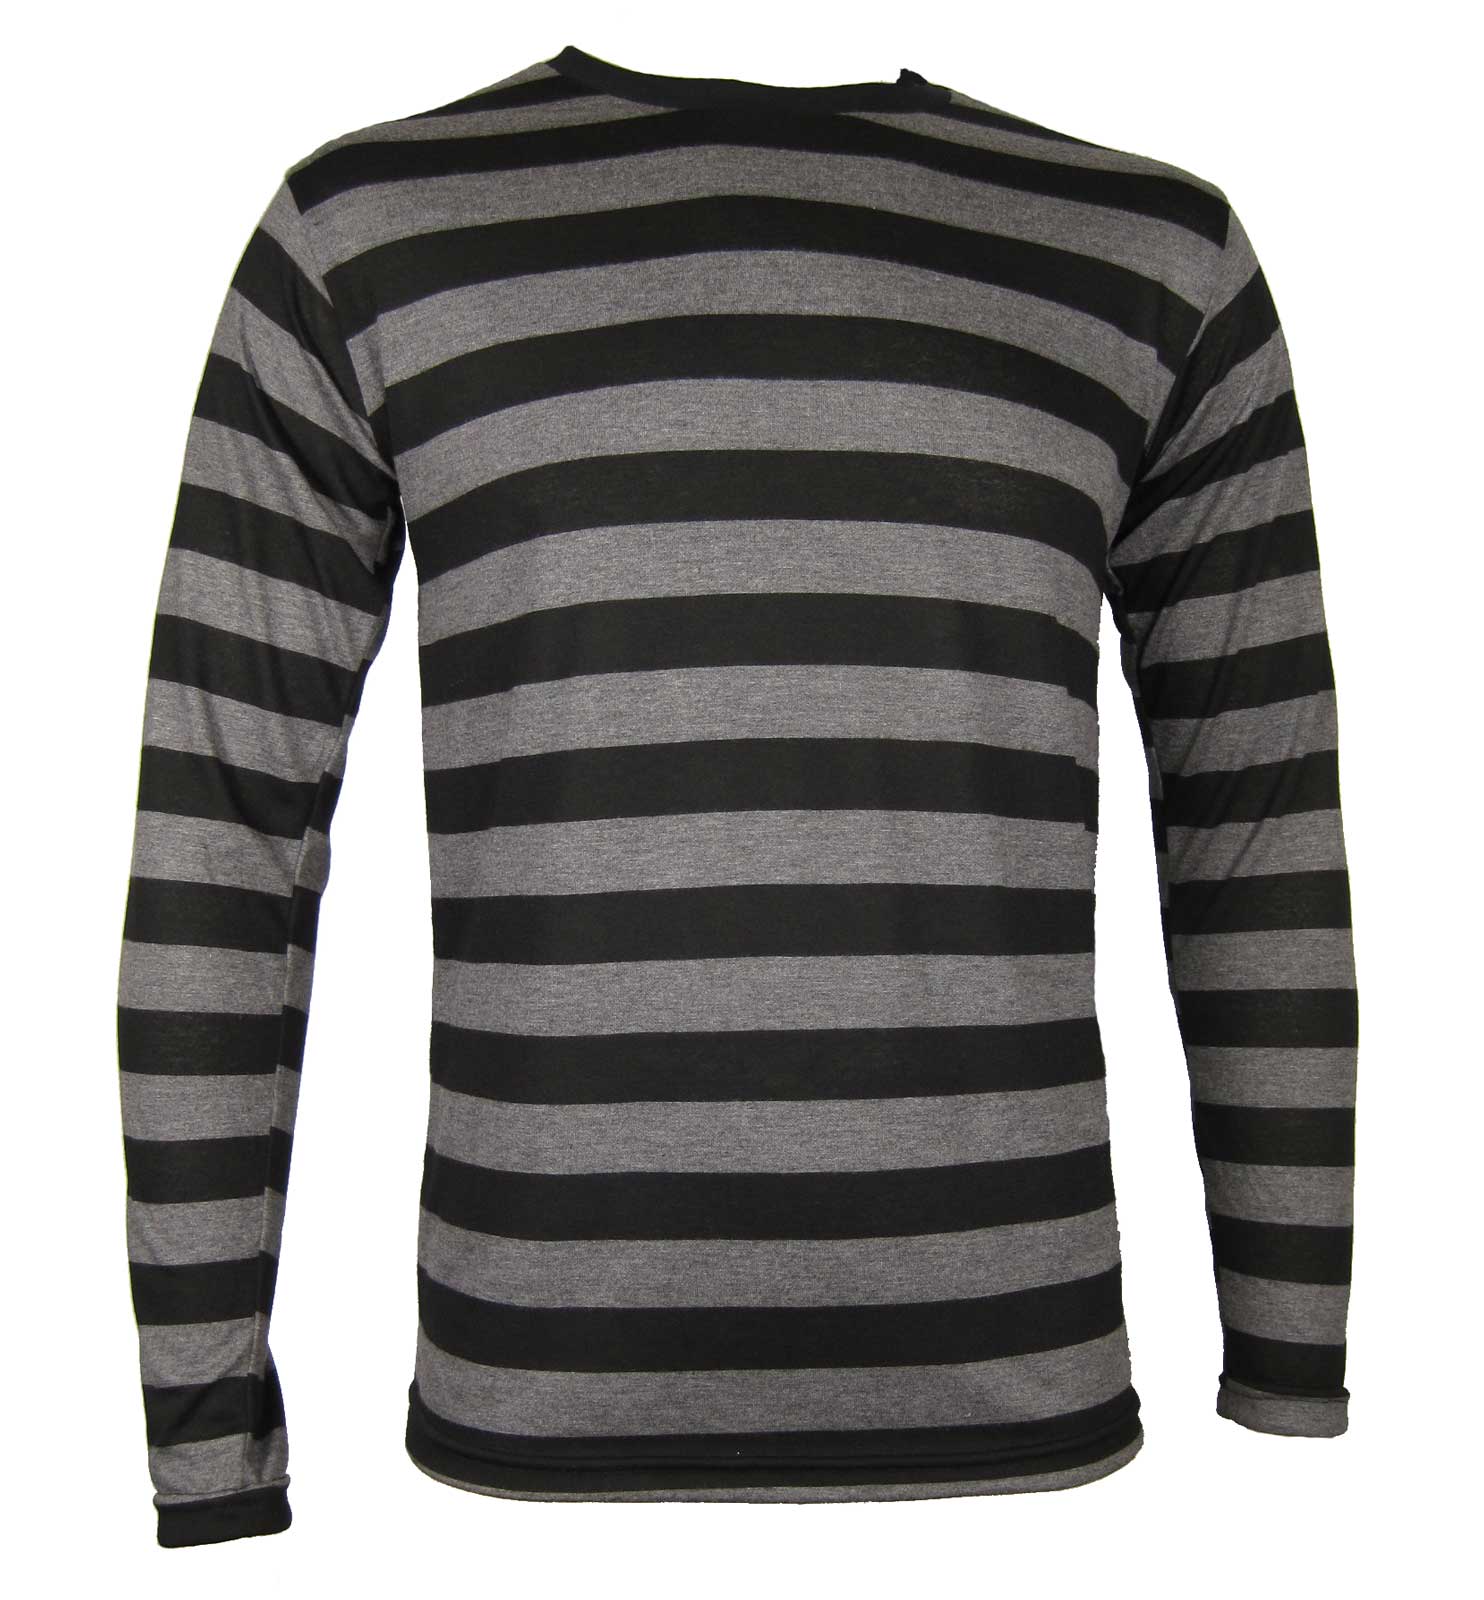 NYC Long Sleeve PUNK GOTH Emo Stripe Striped Shirt Black Charcoal S M L XL